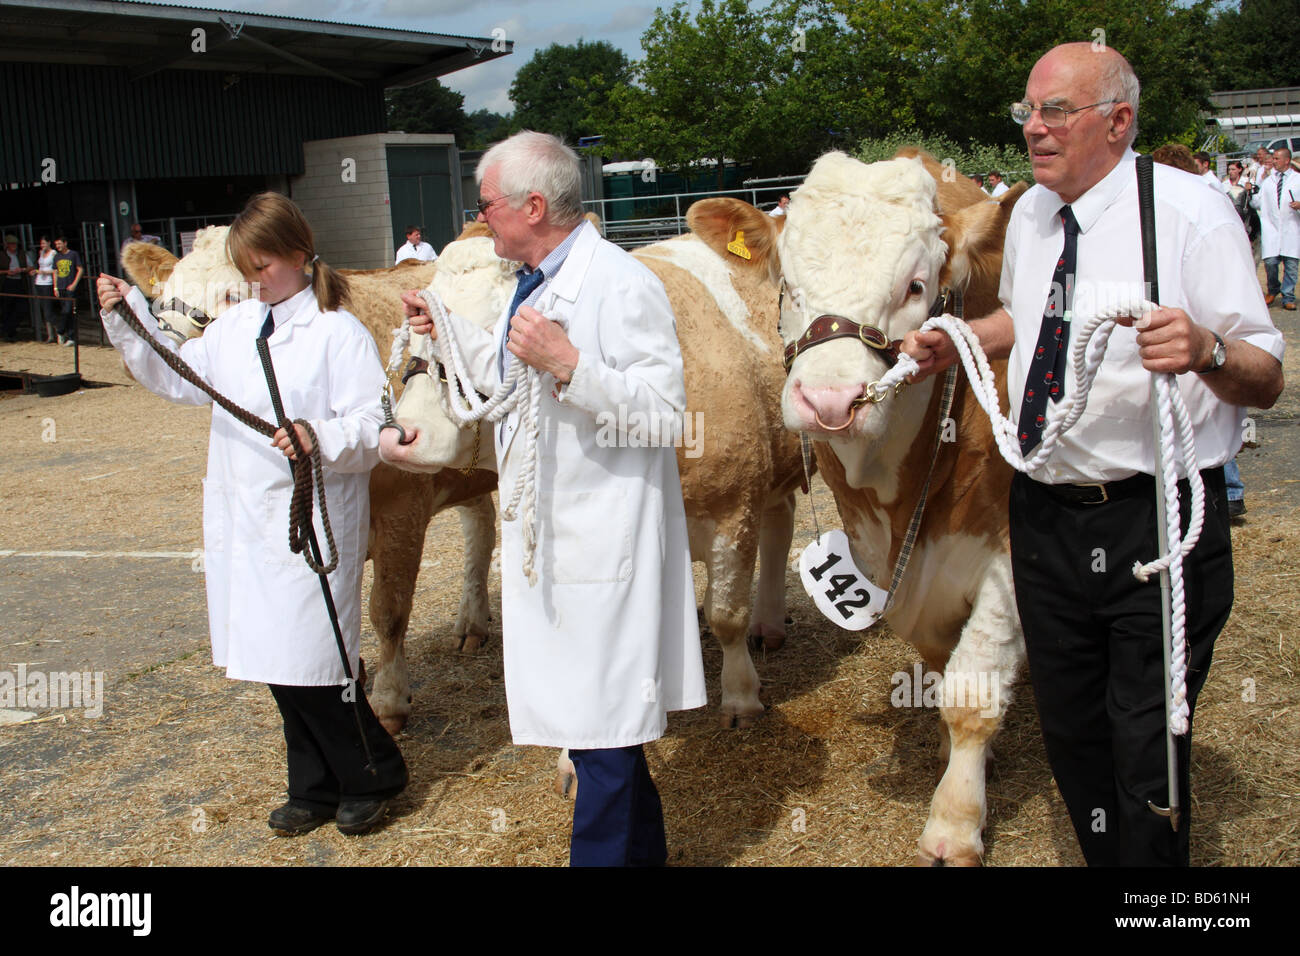 Les agriculteurs avec les bovins à l'Bakewell Show, Bakewell, Derbyshire, Angleterre, Royaume-Uni Banque D'Images